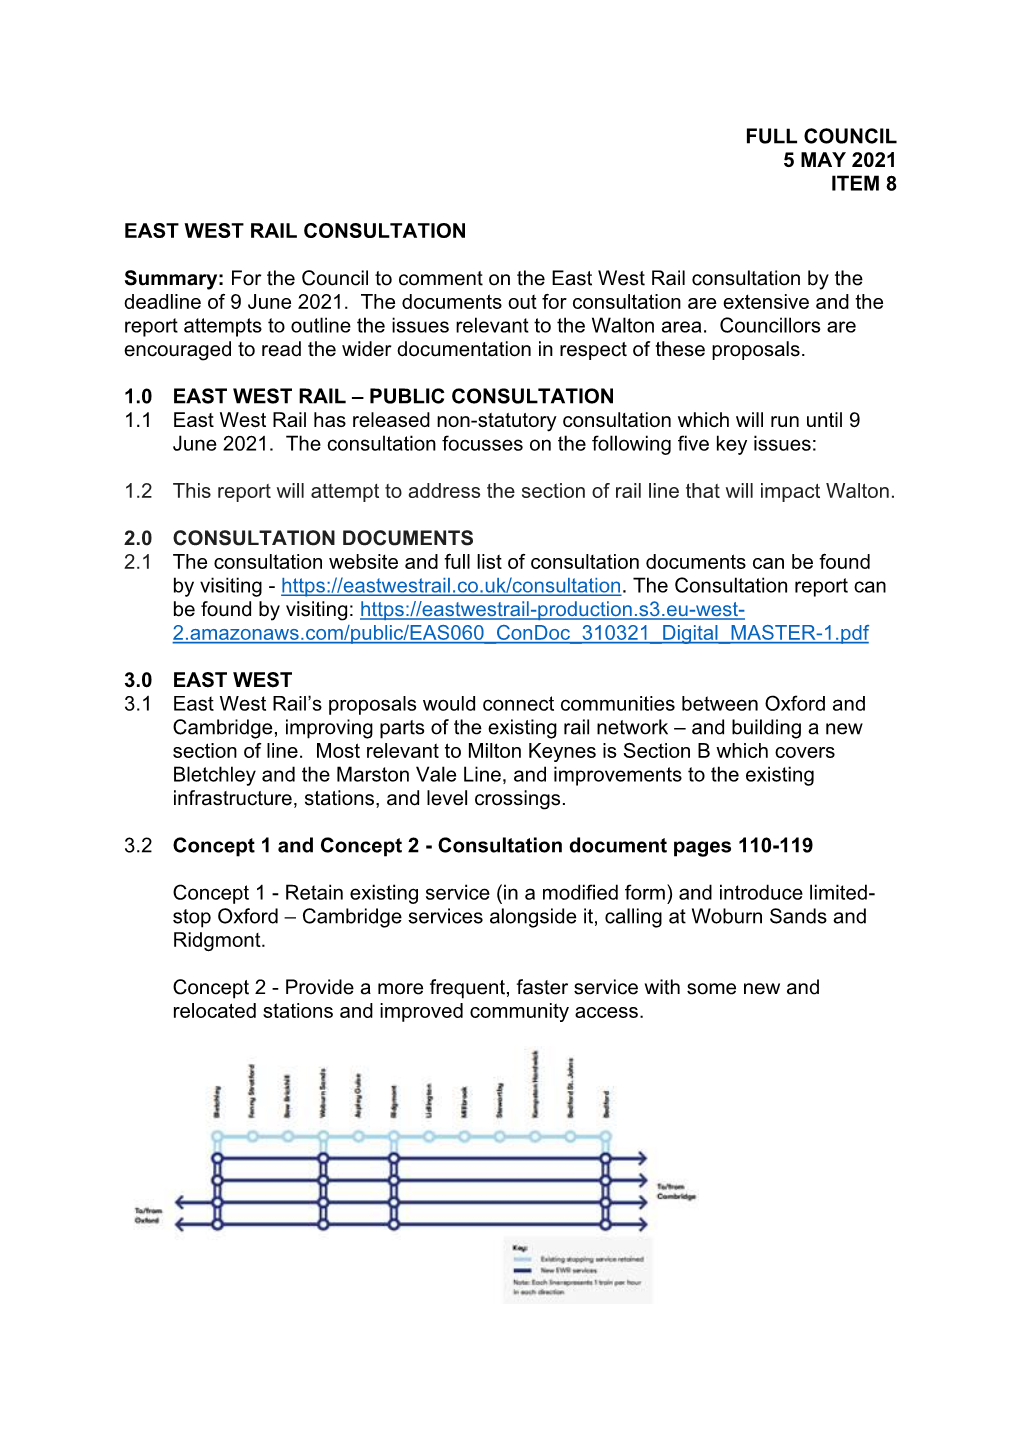 East West Rail (Ewr) Consultation